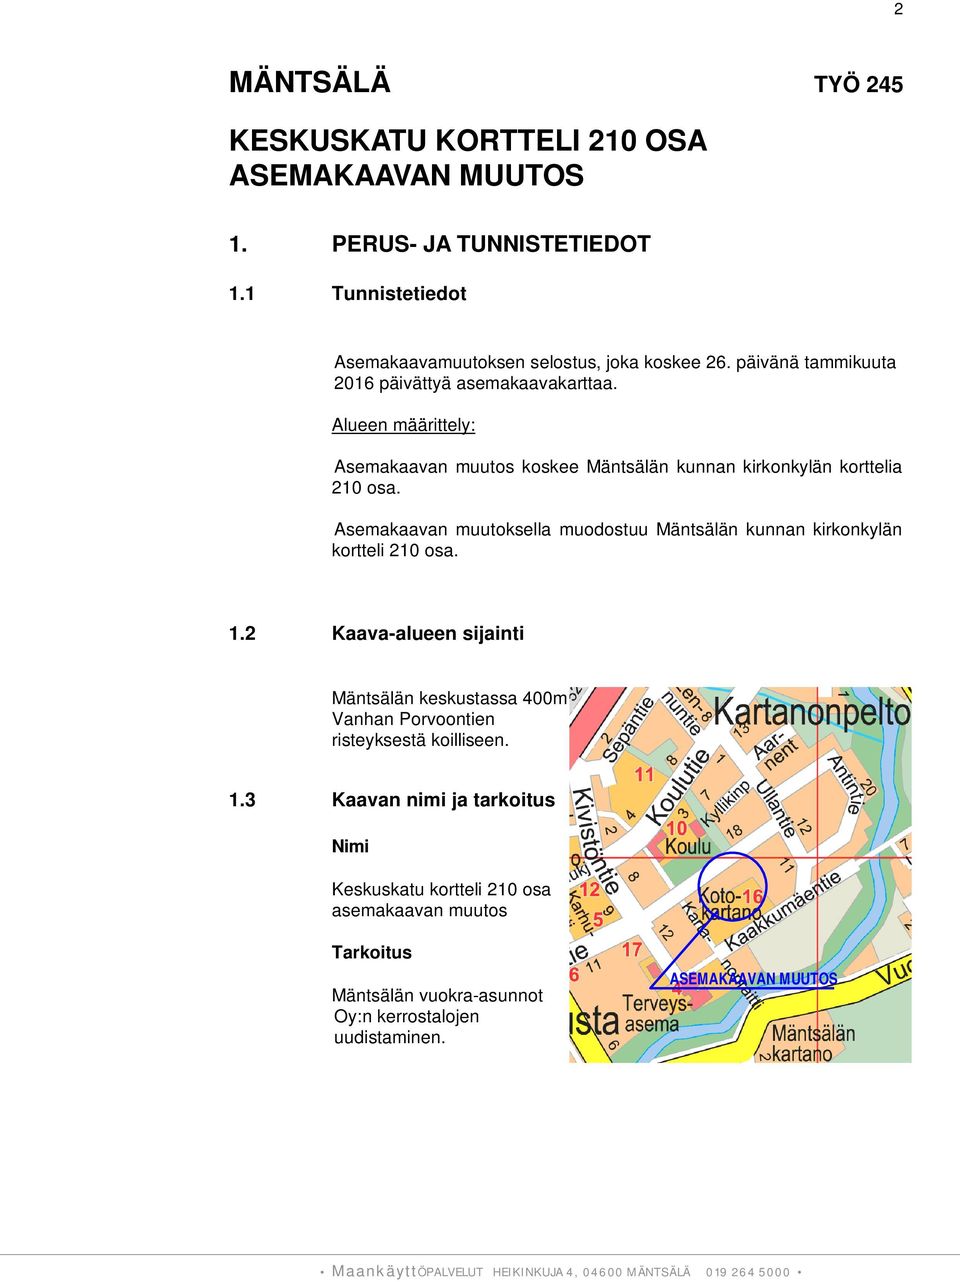 Asemakaavan muutoksella muodostuu Mäntsälän kunnan kirkonkylän kortteli 210 osa. 1.